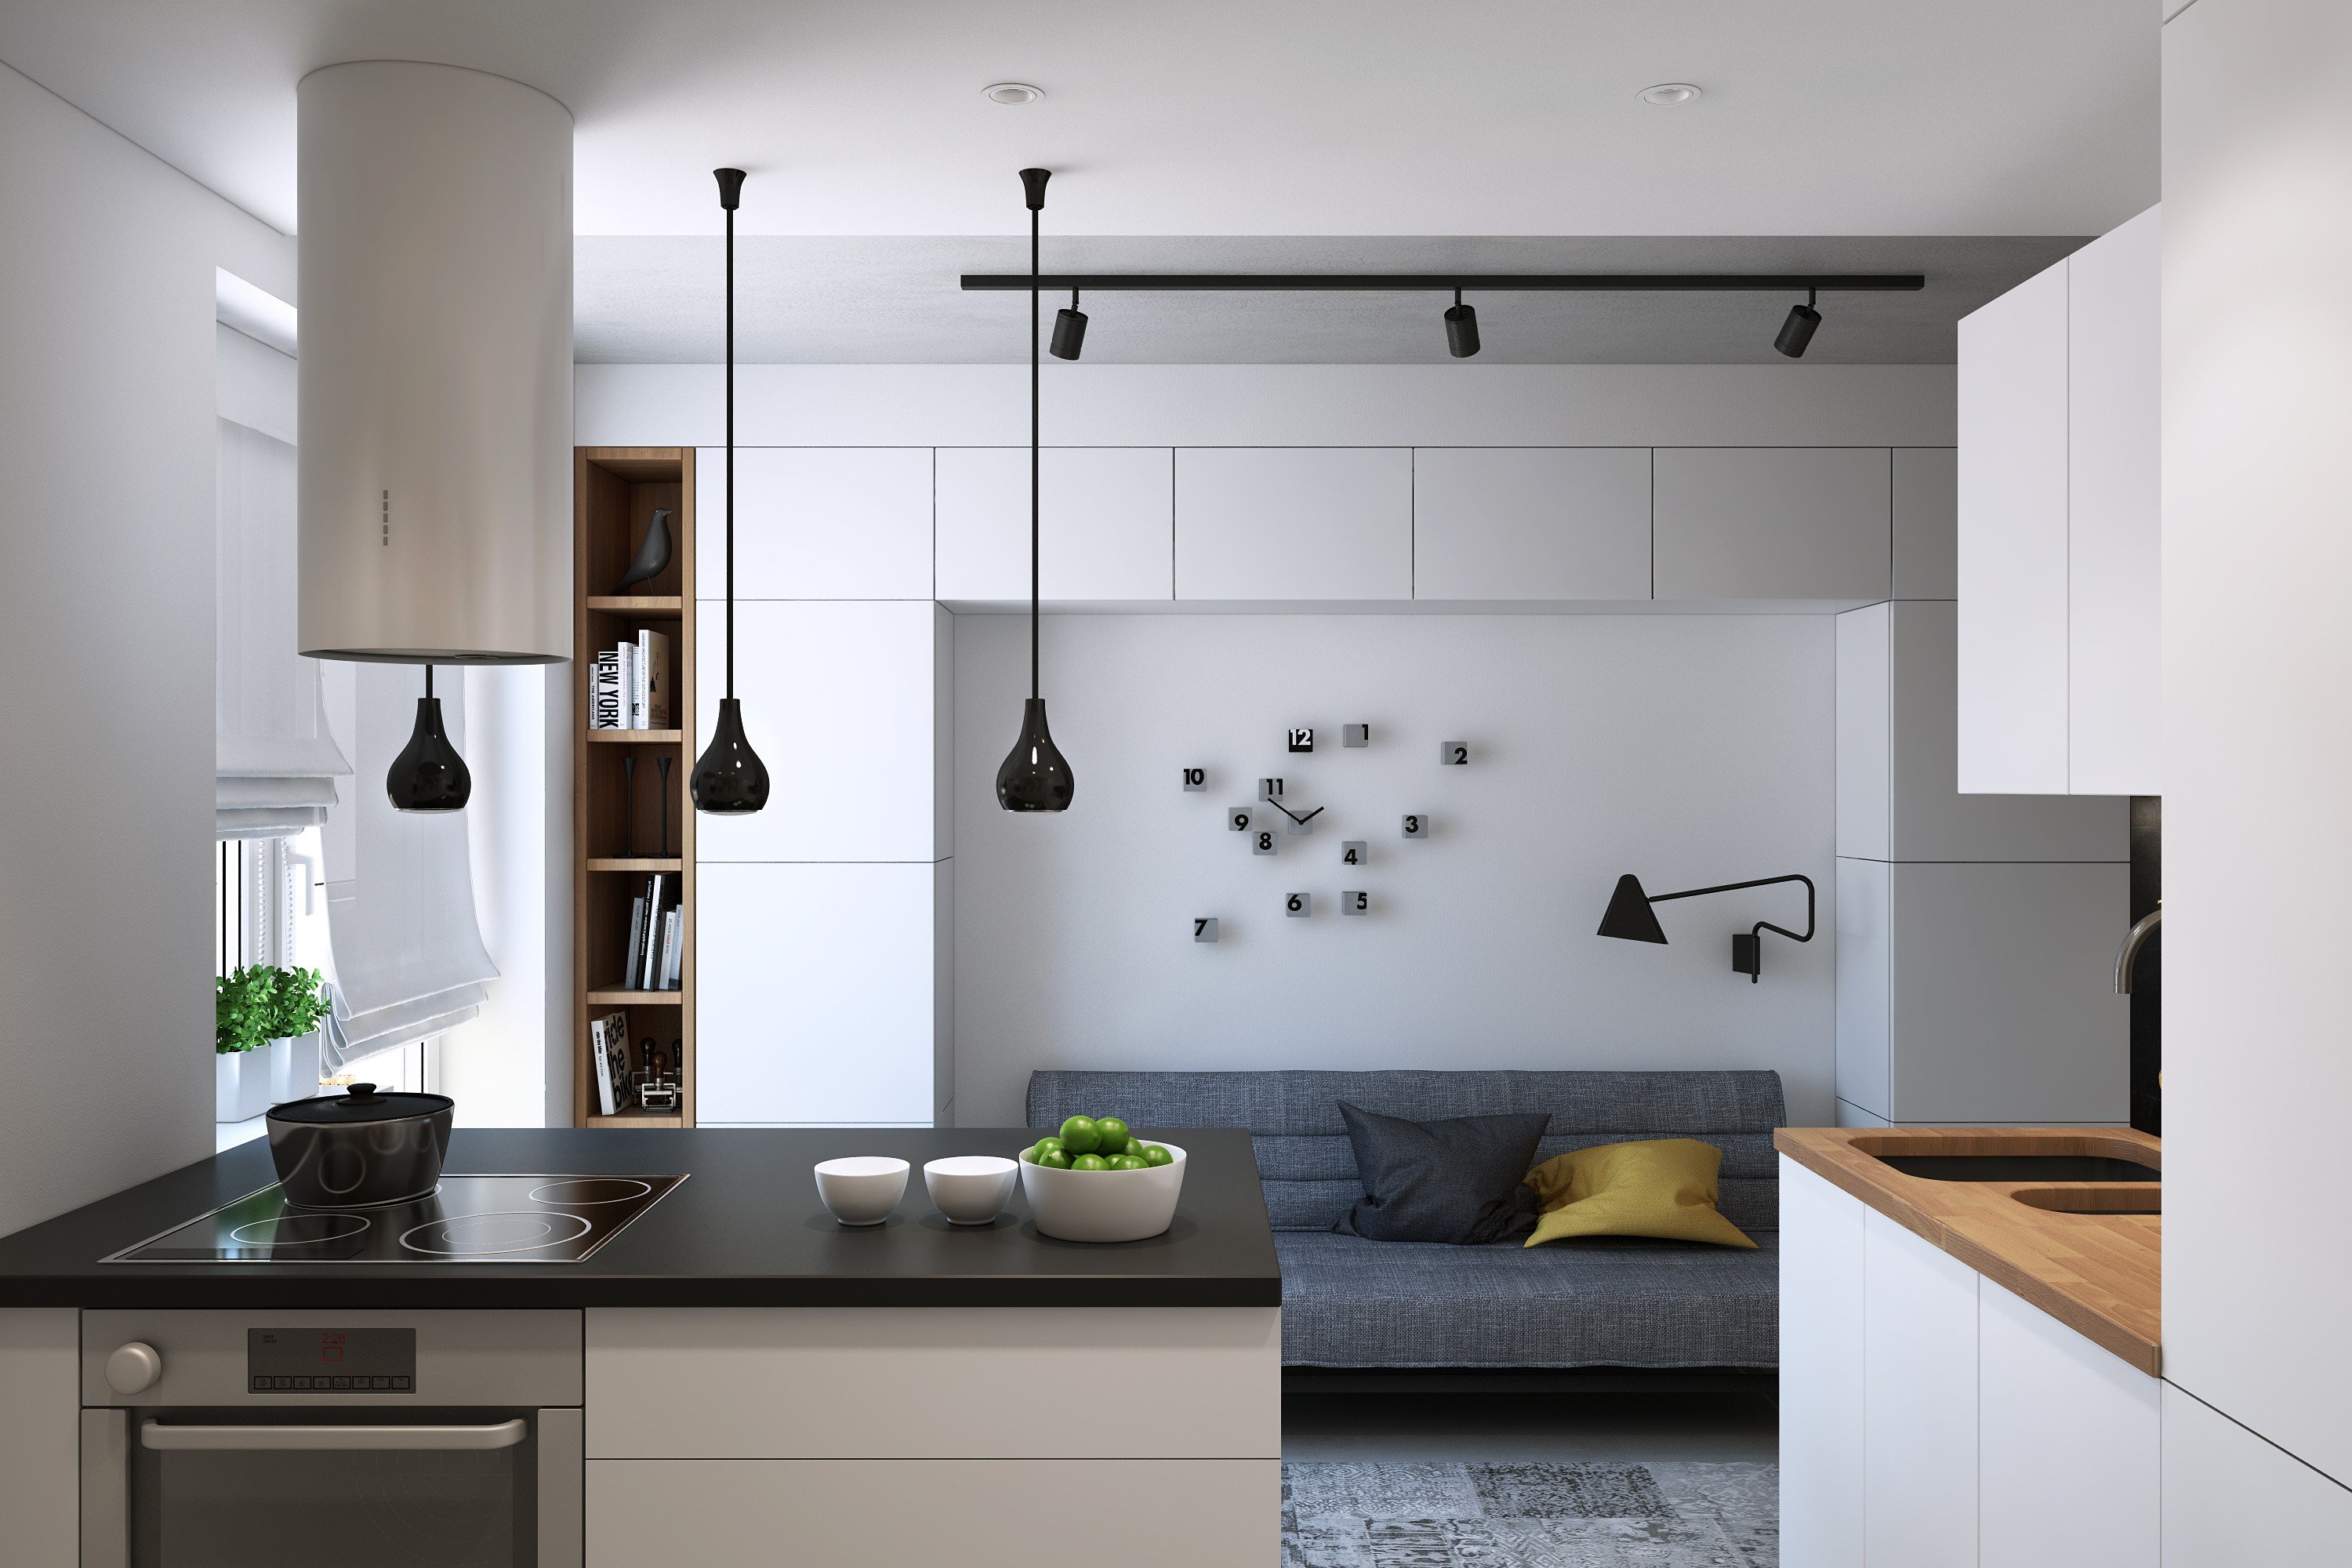 Дизайн кухни в стиле минимализм: отделка, мебель, освещение и декор